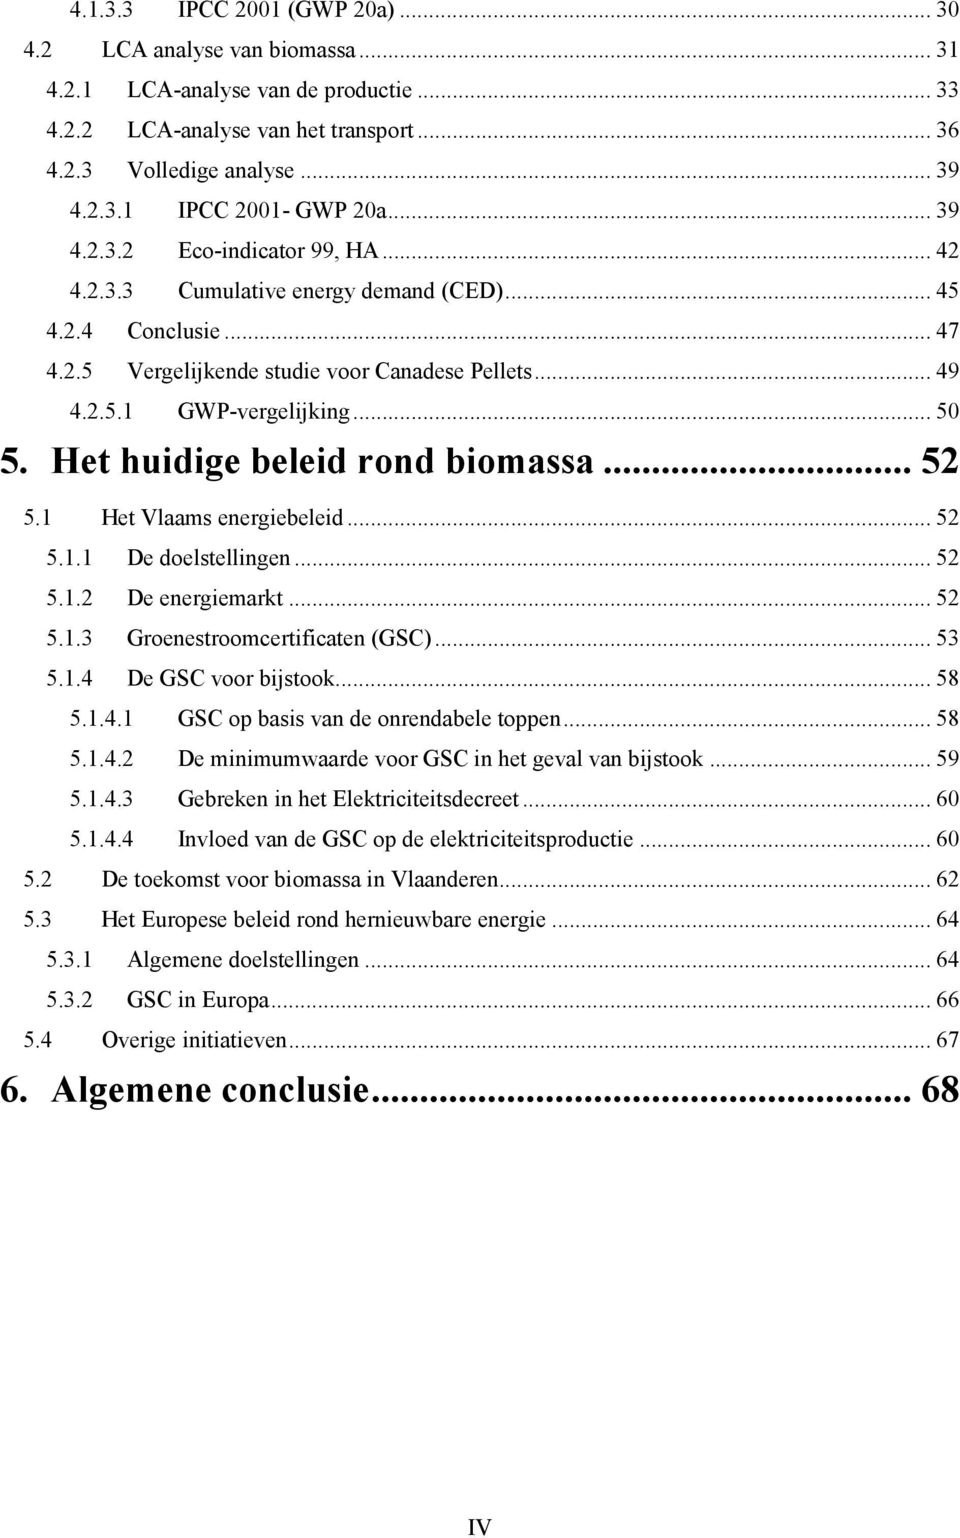 Het huidige beleid rond biomassa... 52 5.1 Het Vlaams energiebeleid... 52 5.1.1 De doelstellingen... 52 5.1.2 De energiemarkt... 52 5.1.3 Groenestroomcertificaten (GSC)... 53 5.1.4 De GSC voor bijstook.